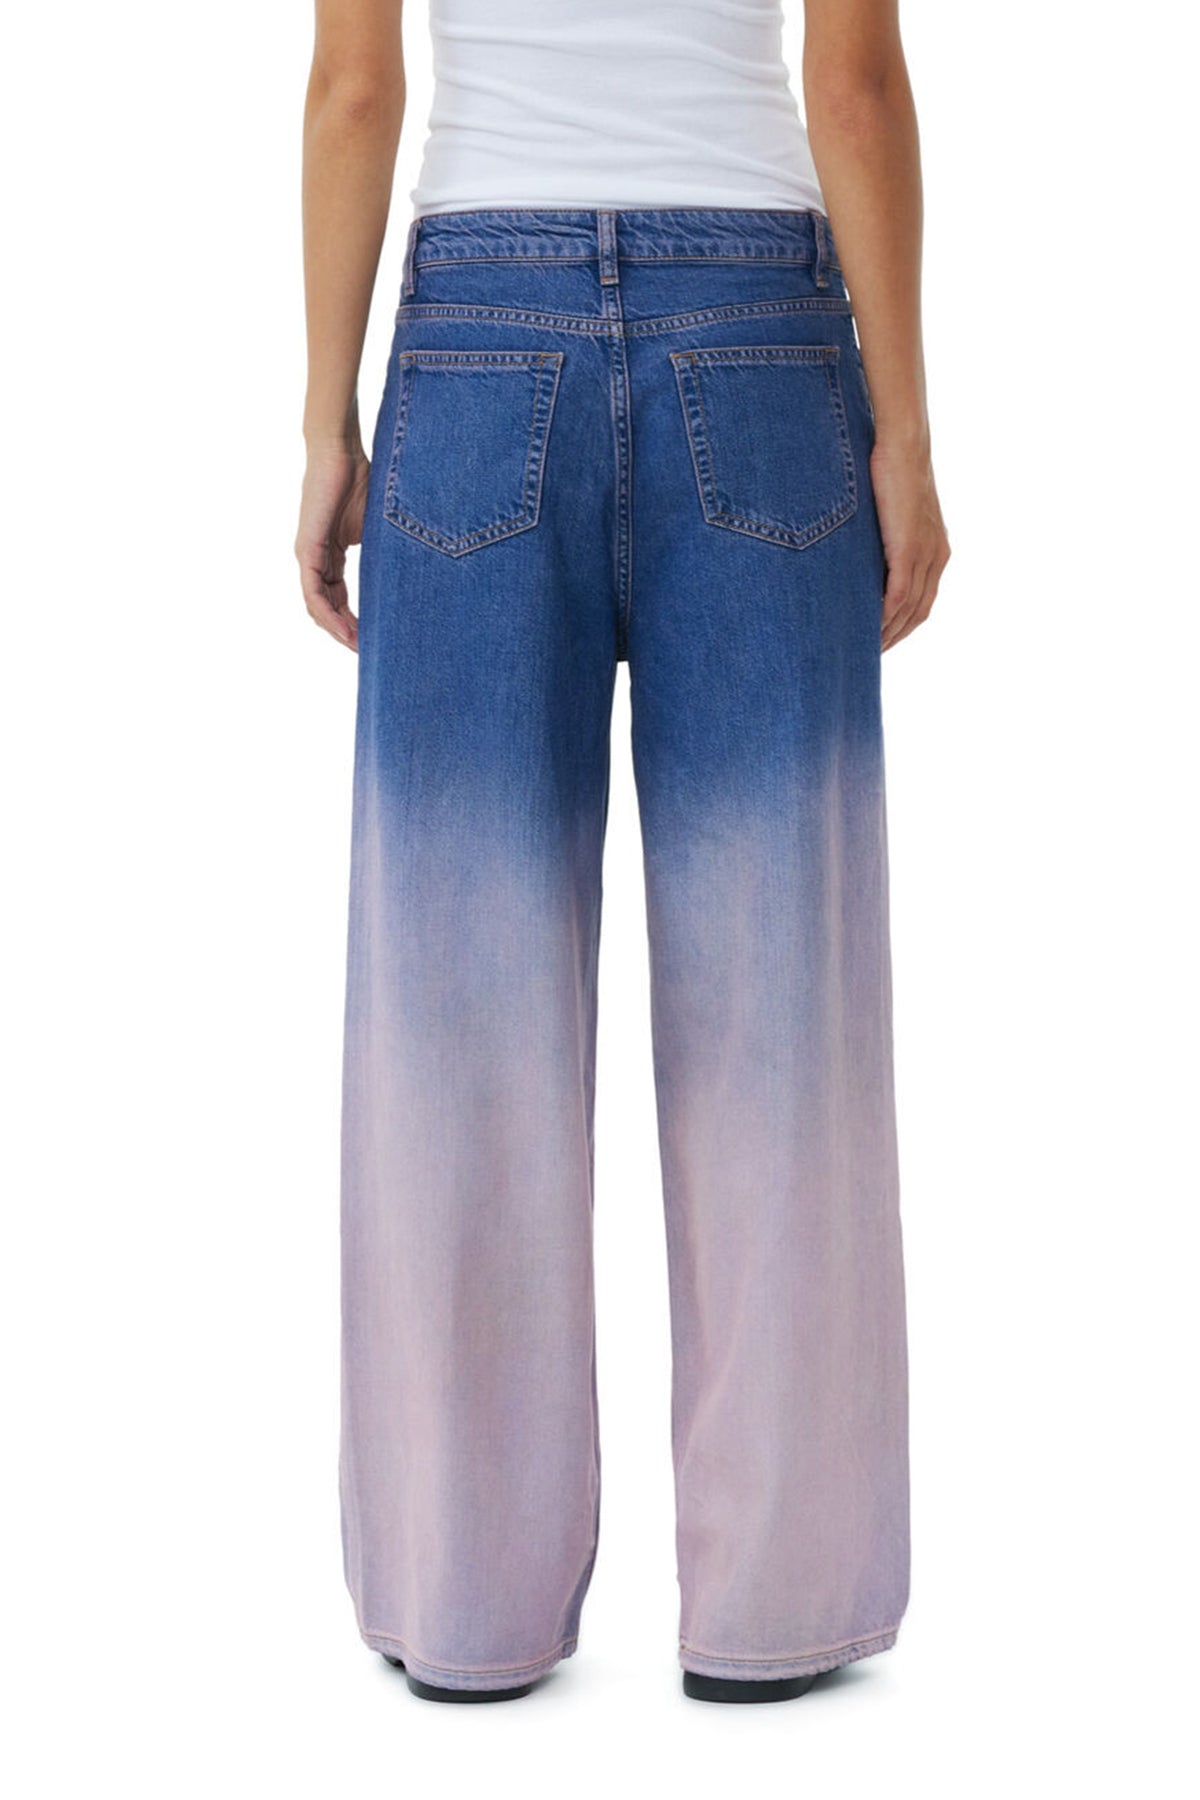 Future Denim Wide Jeans in Bleach - shop-olivia.com